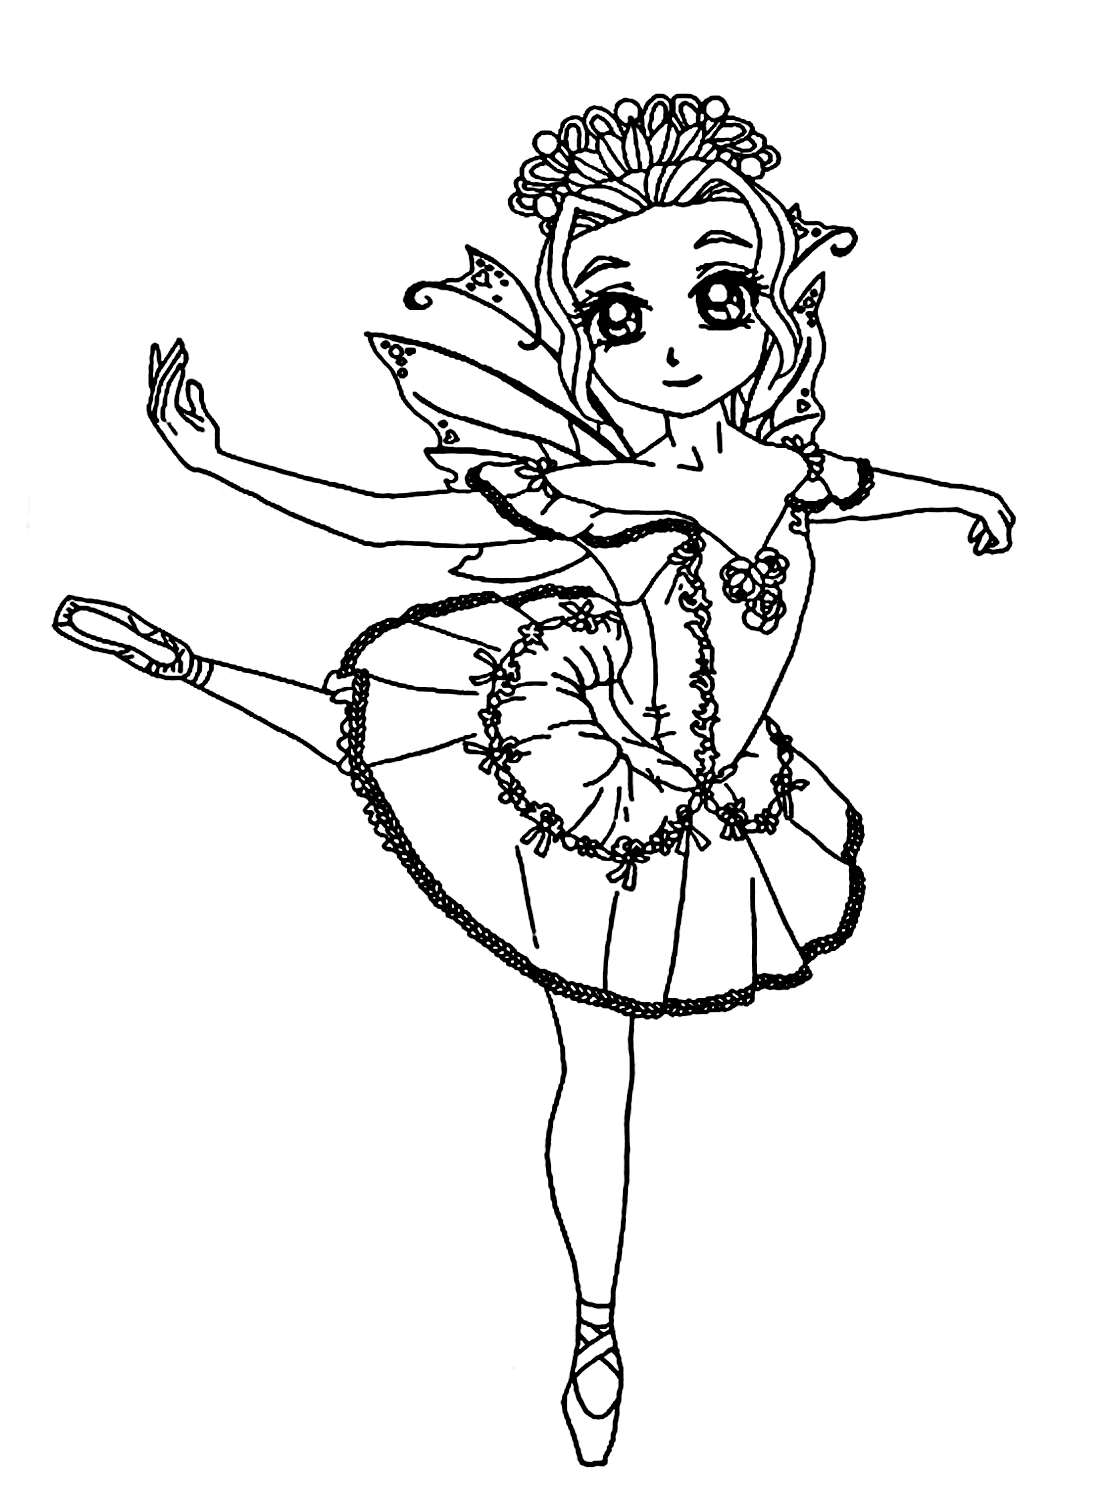 Ein kleines Ballerina-Mädchenbild